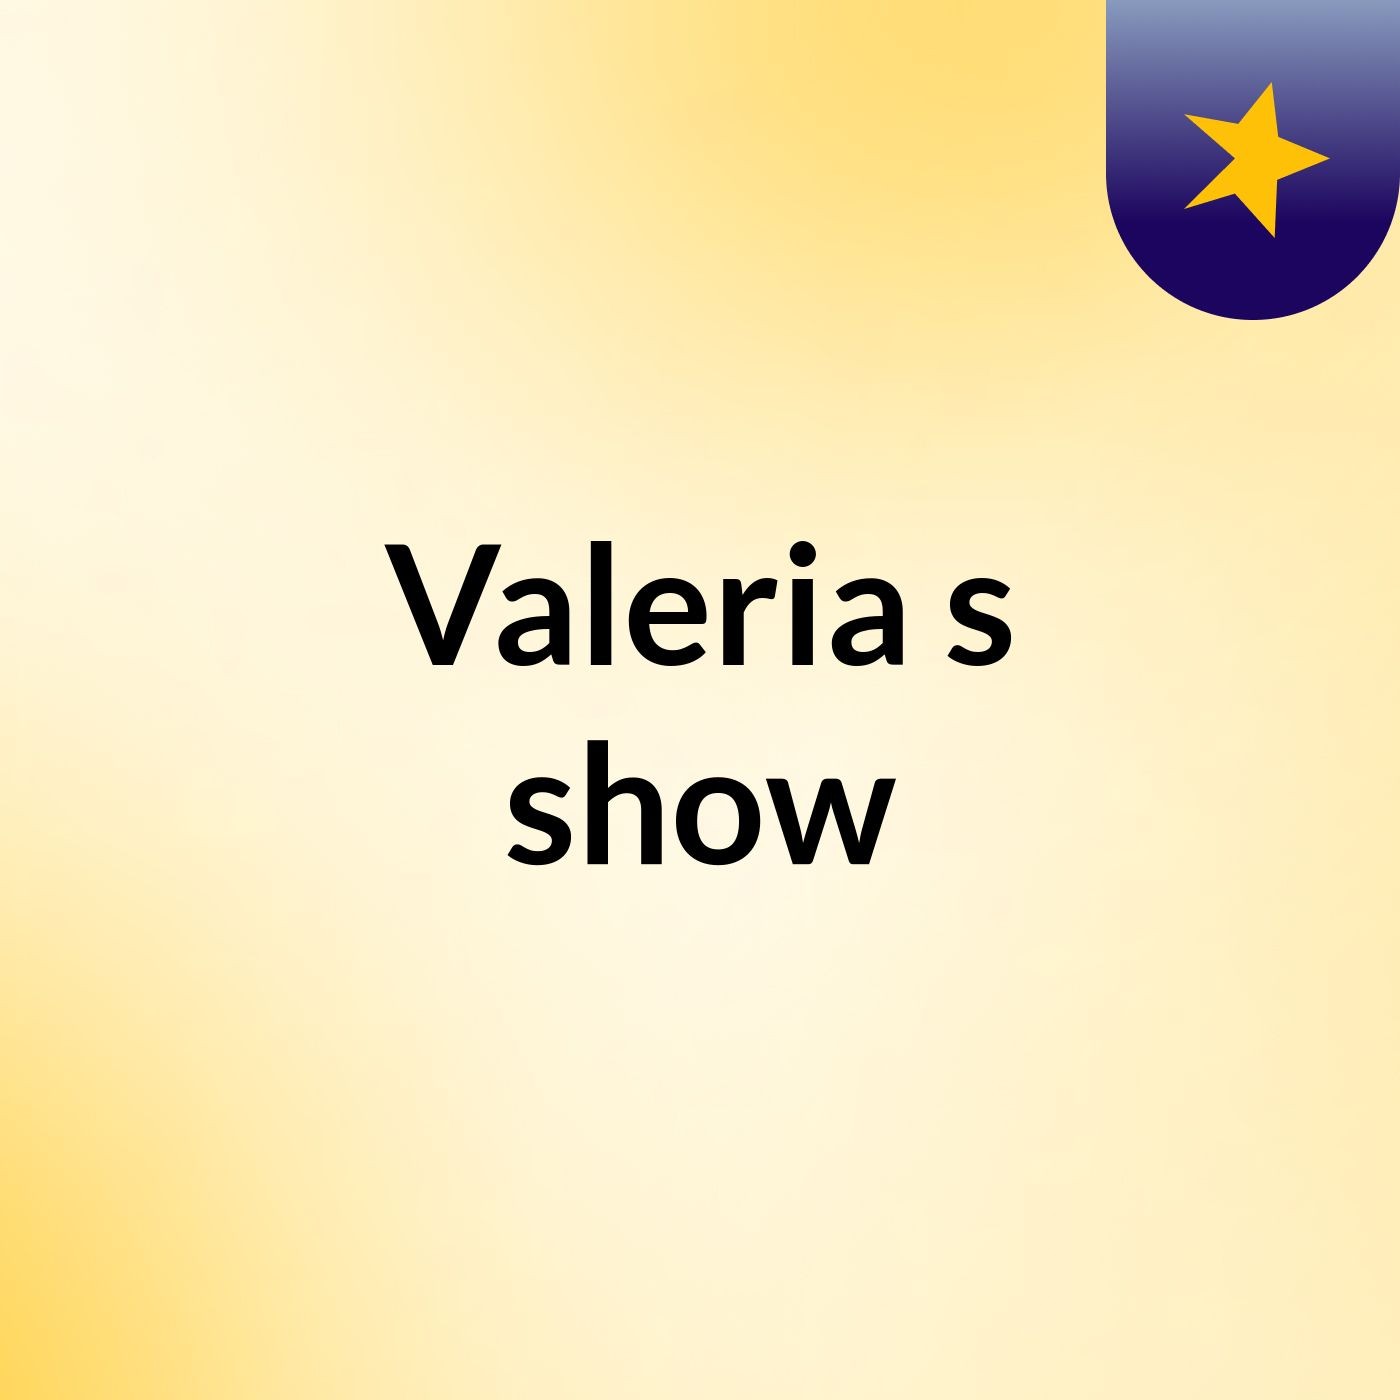 Valeria's show